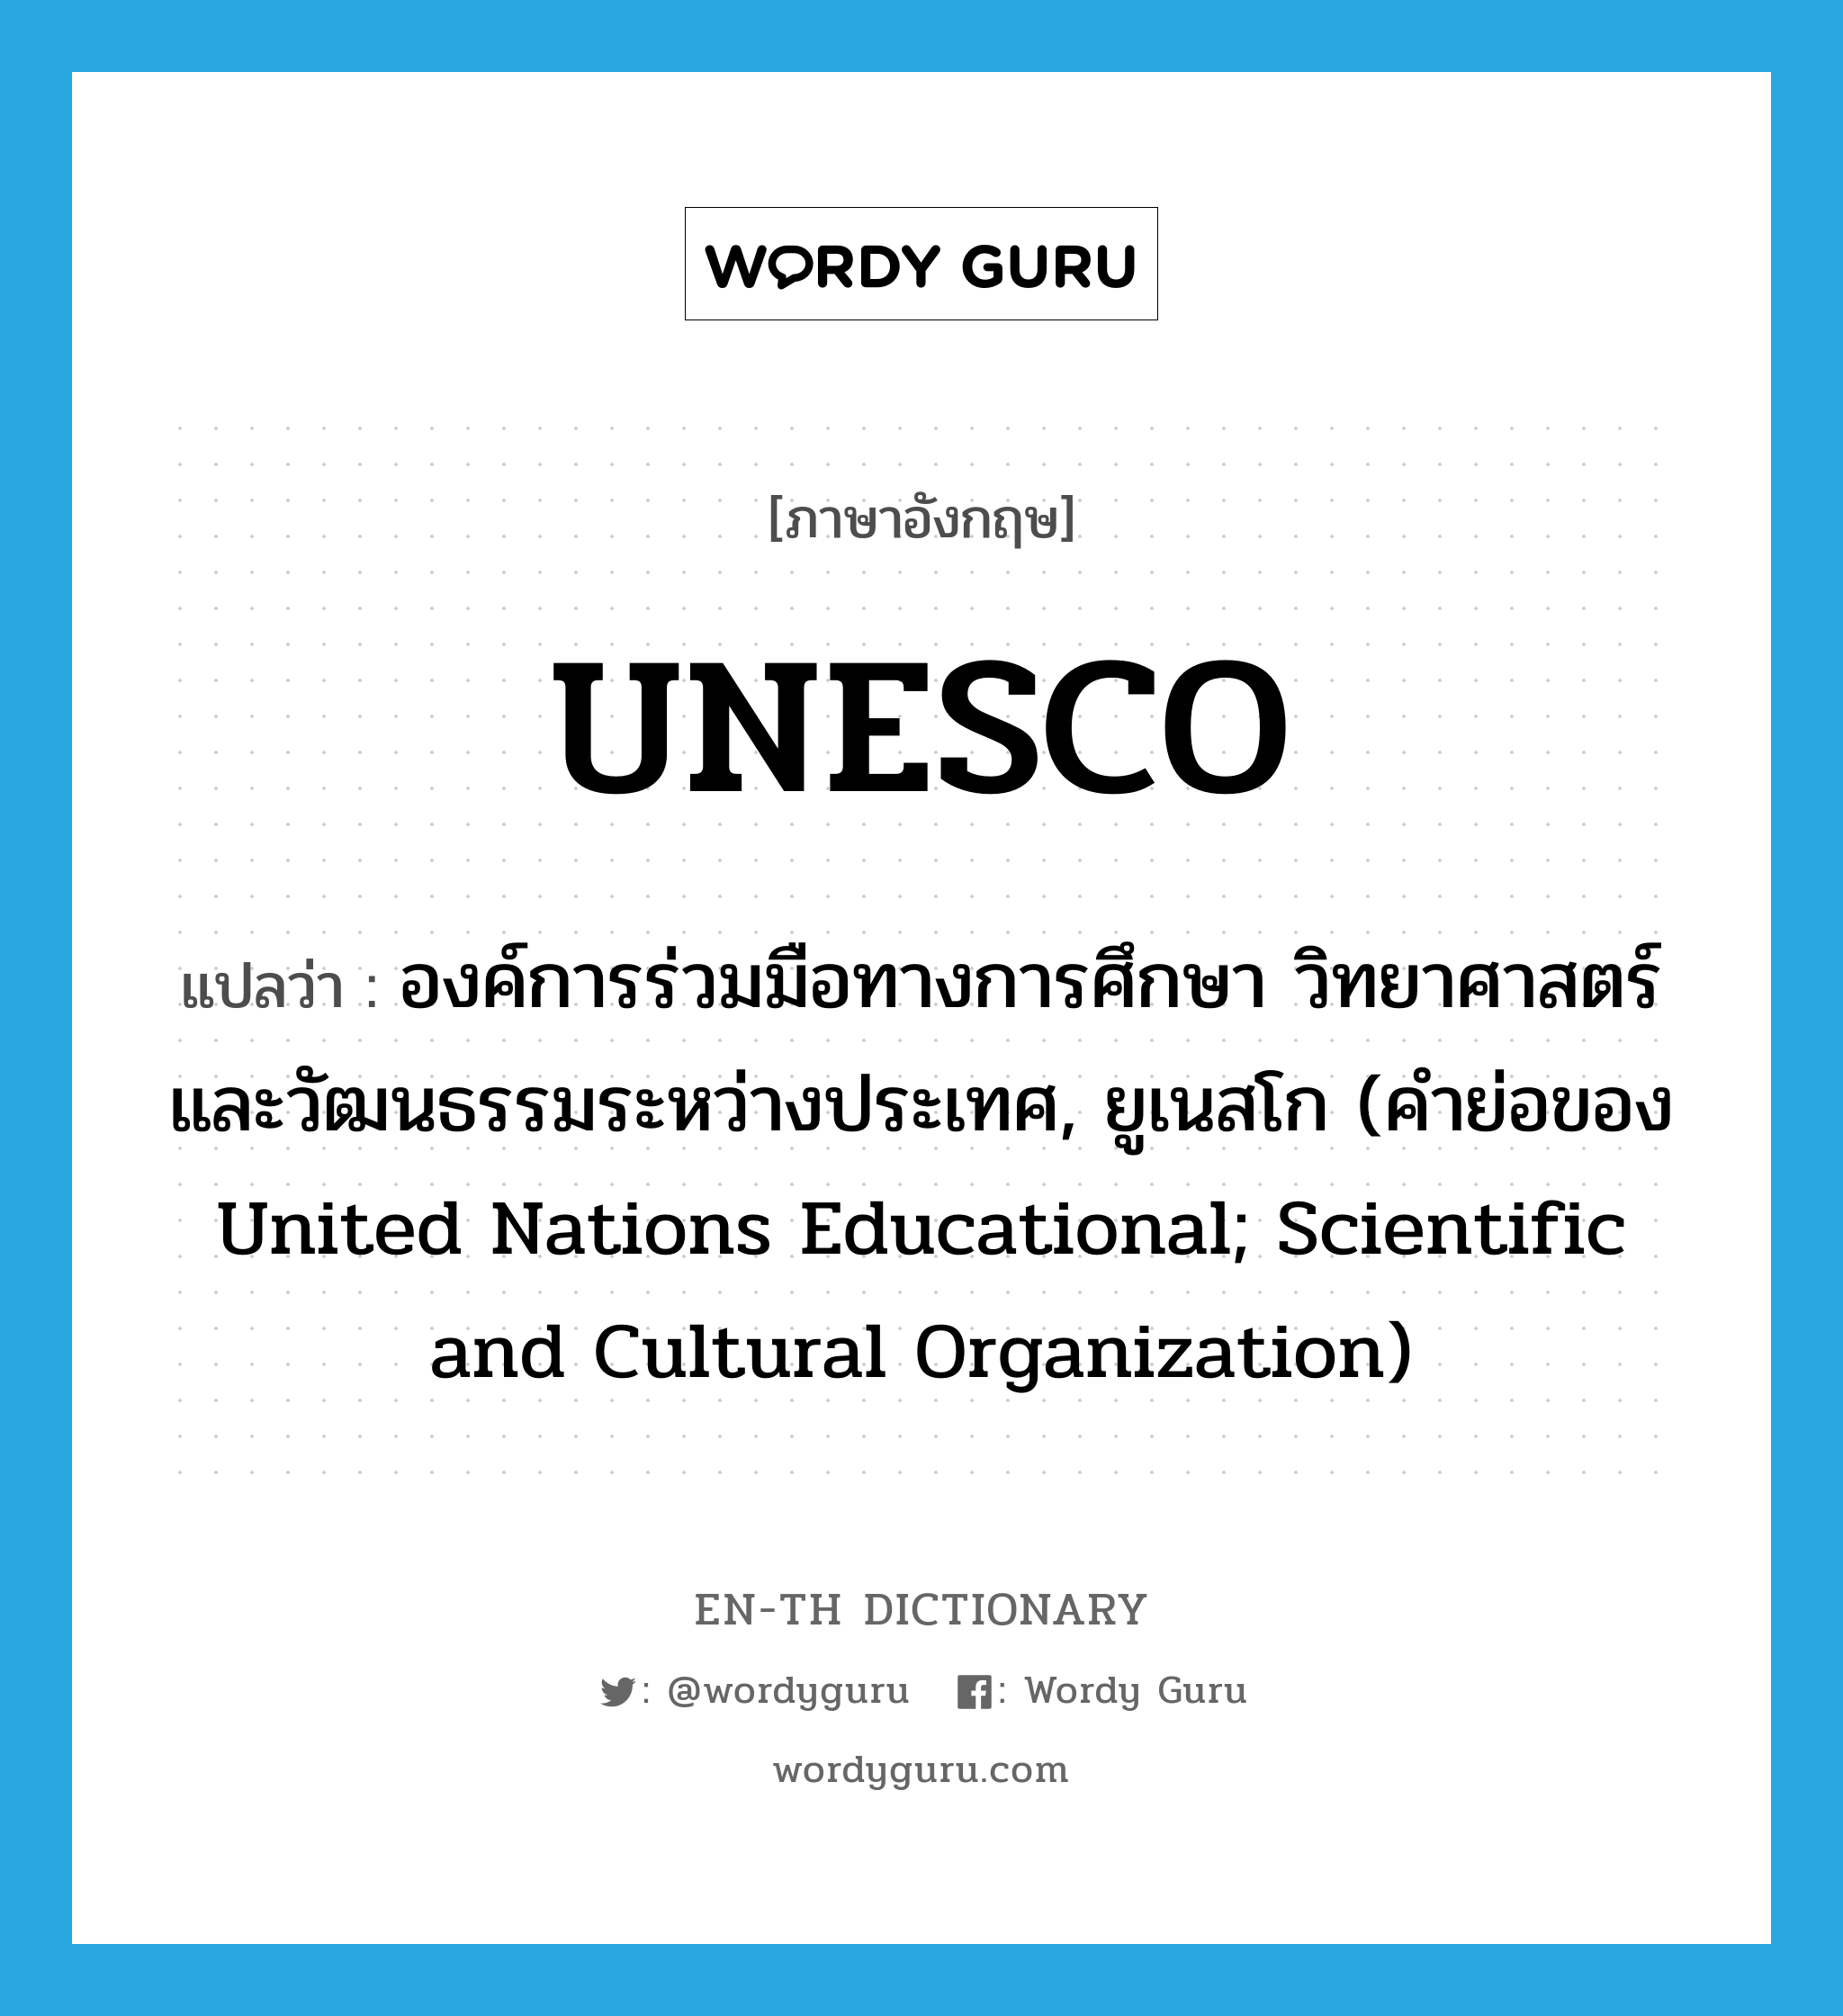 องค์การร่วมมือทางการศึกษา วิทยาศาสตร์ และวัฒนธรรมระหว่างประเทศ, ยูเนสโก (คำย่อของ United Nations Educational; Scientific and Cultural Organization) ภาษาอังกฤษ?, คำศัพท์ภาษาอังกฤษ องค์การร่วมมือทางการศึกษา วิทยาศาสตร์ และวัฒนธรรมระหว่างประเทศ, ยูเนสโก (คำย่อของ United Nations Educational; Scientific and Cultural Organization) แปลว่า UNESCO ประเภท ABBR หมวด ABBR